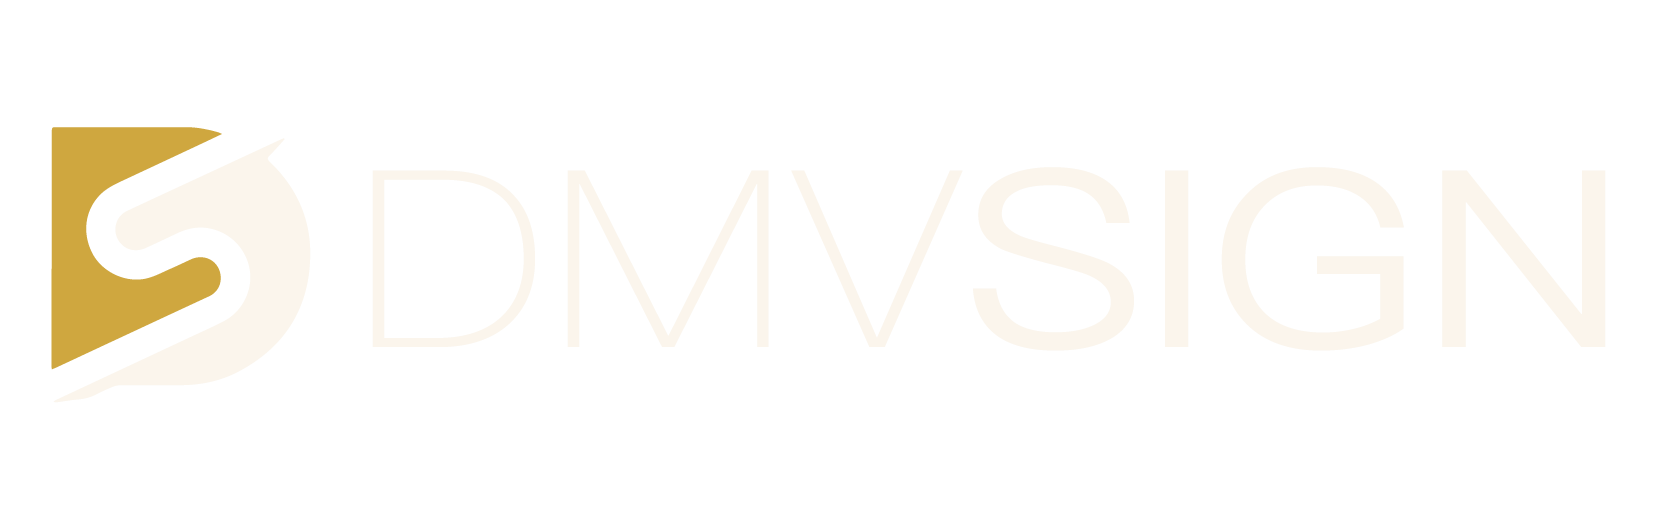 DmvSign